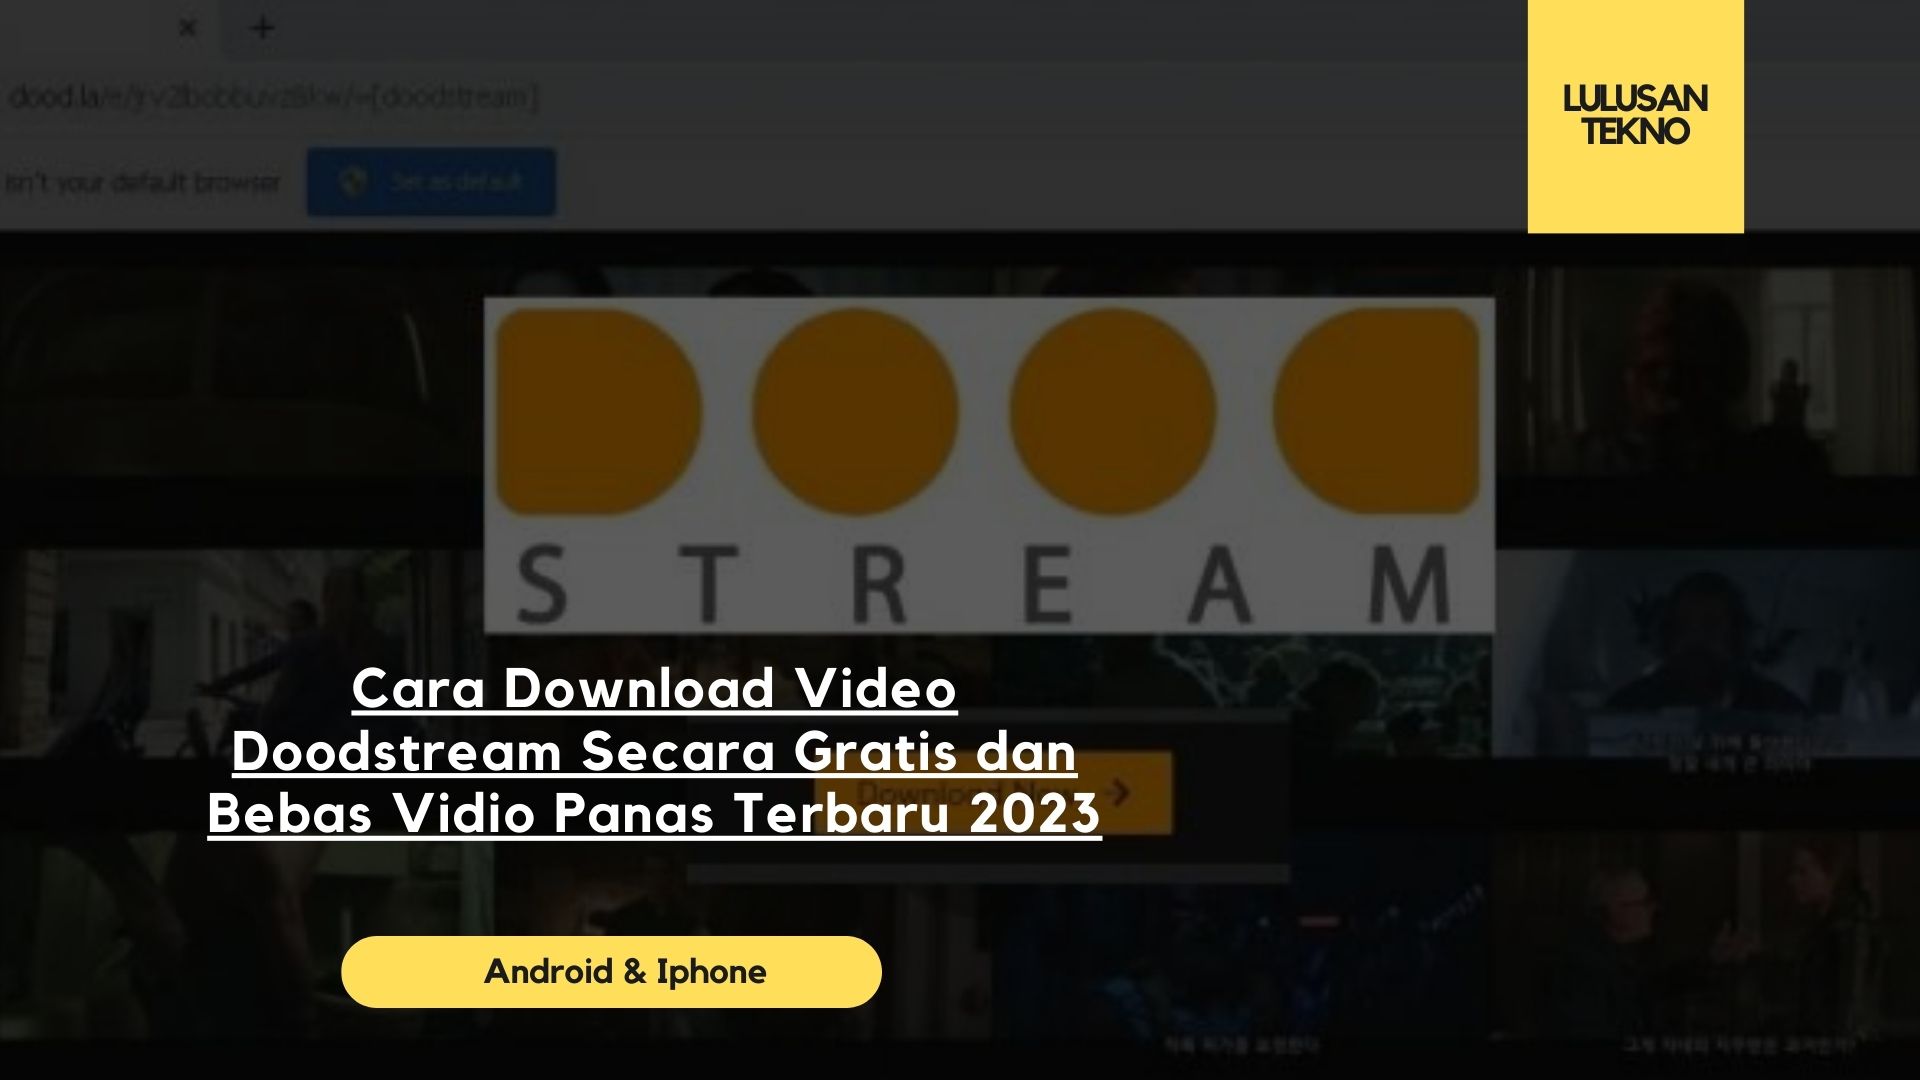 Cara Download Video Doodstream Secara Gratis dan Bebas Vidio Panas Terbaru 2023